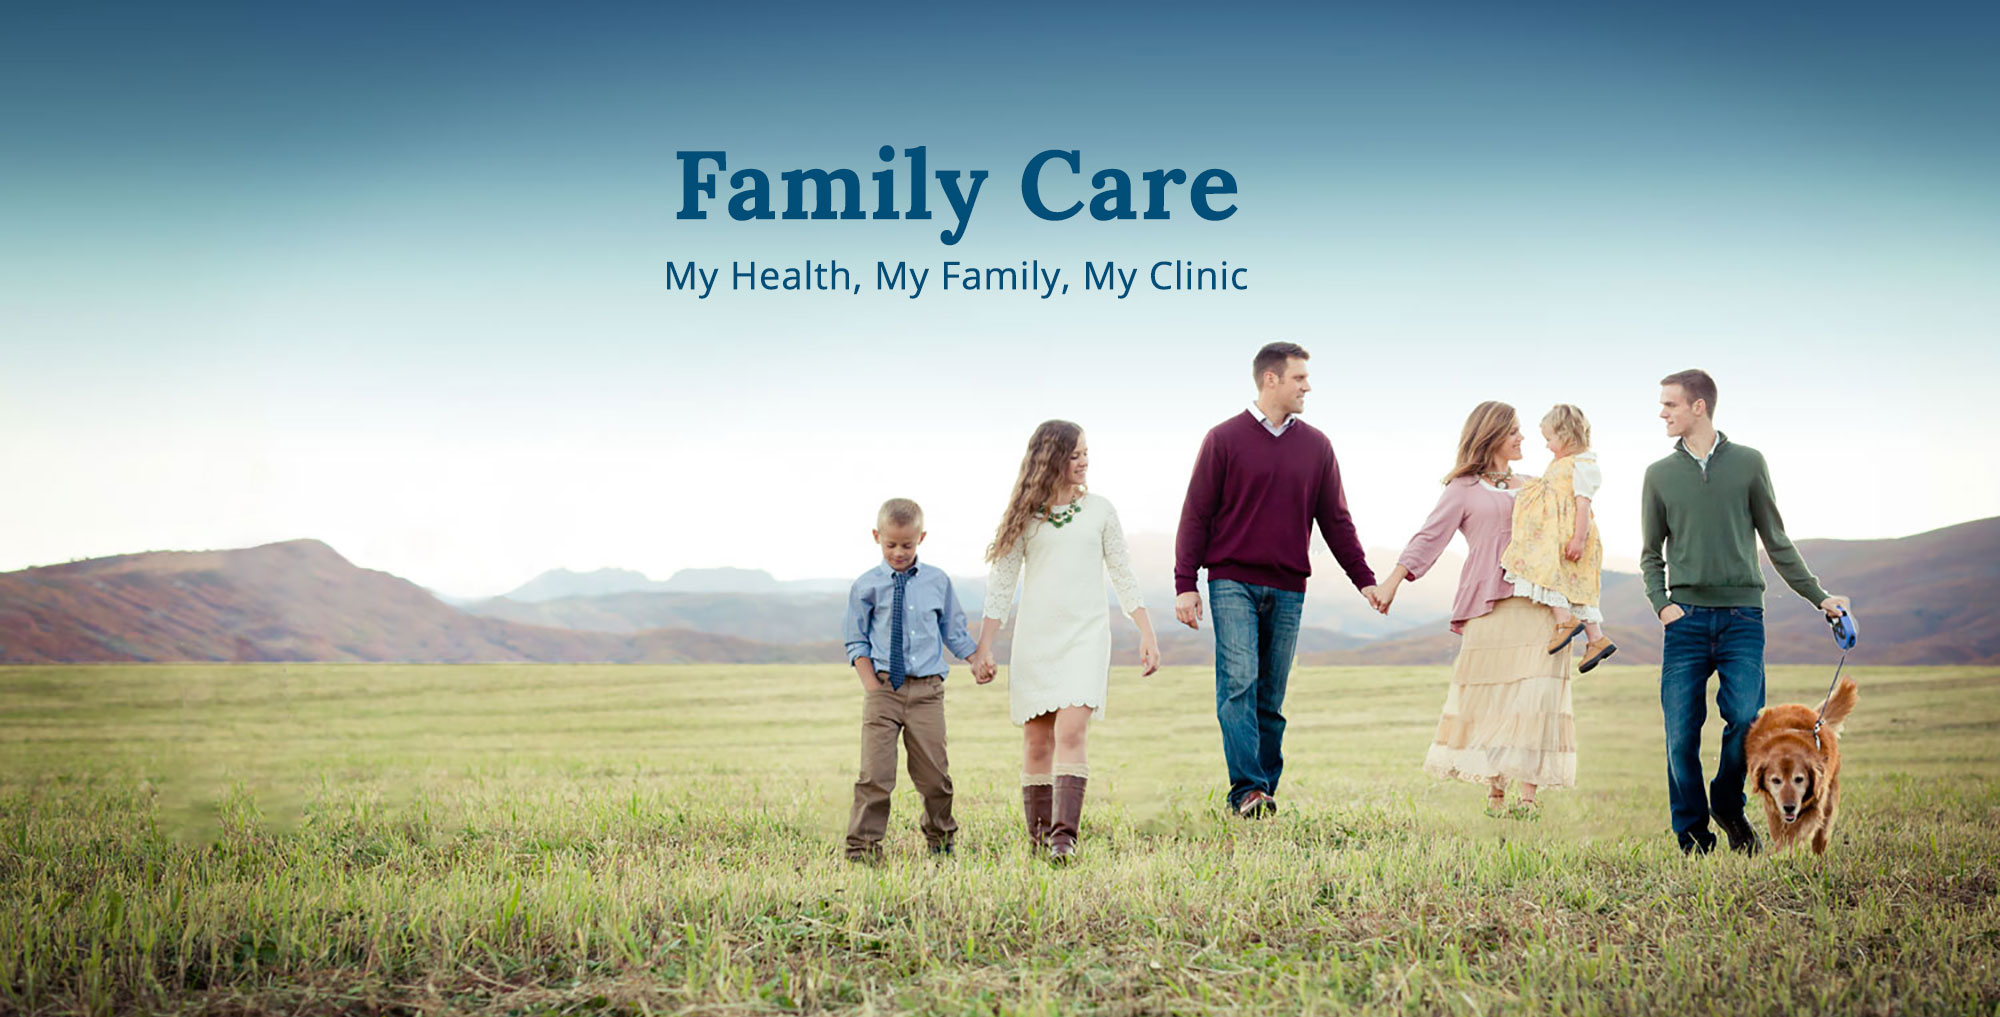 2-Family-Care-1200x610.jpg